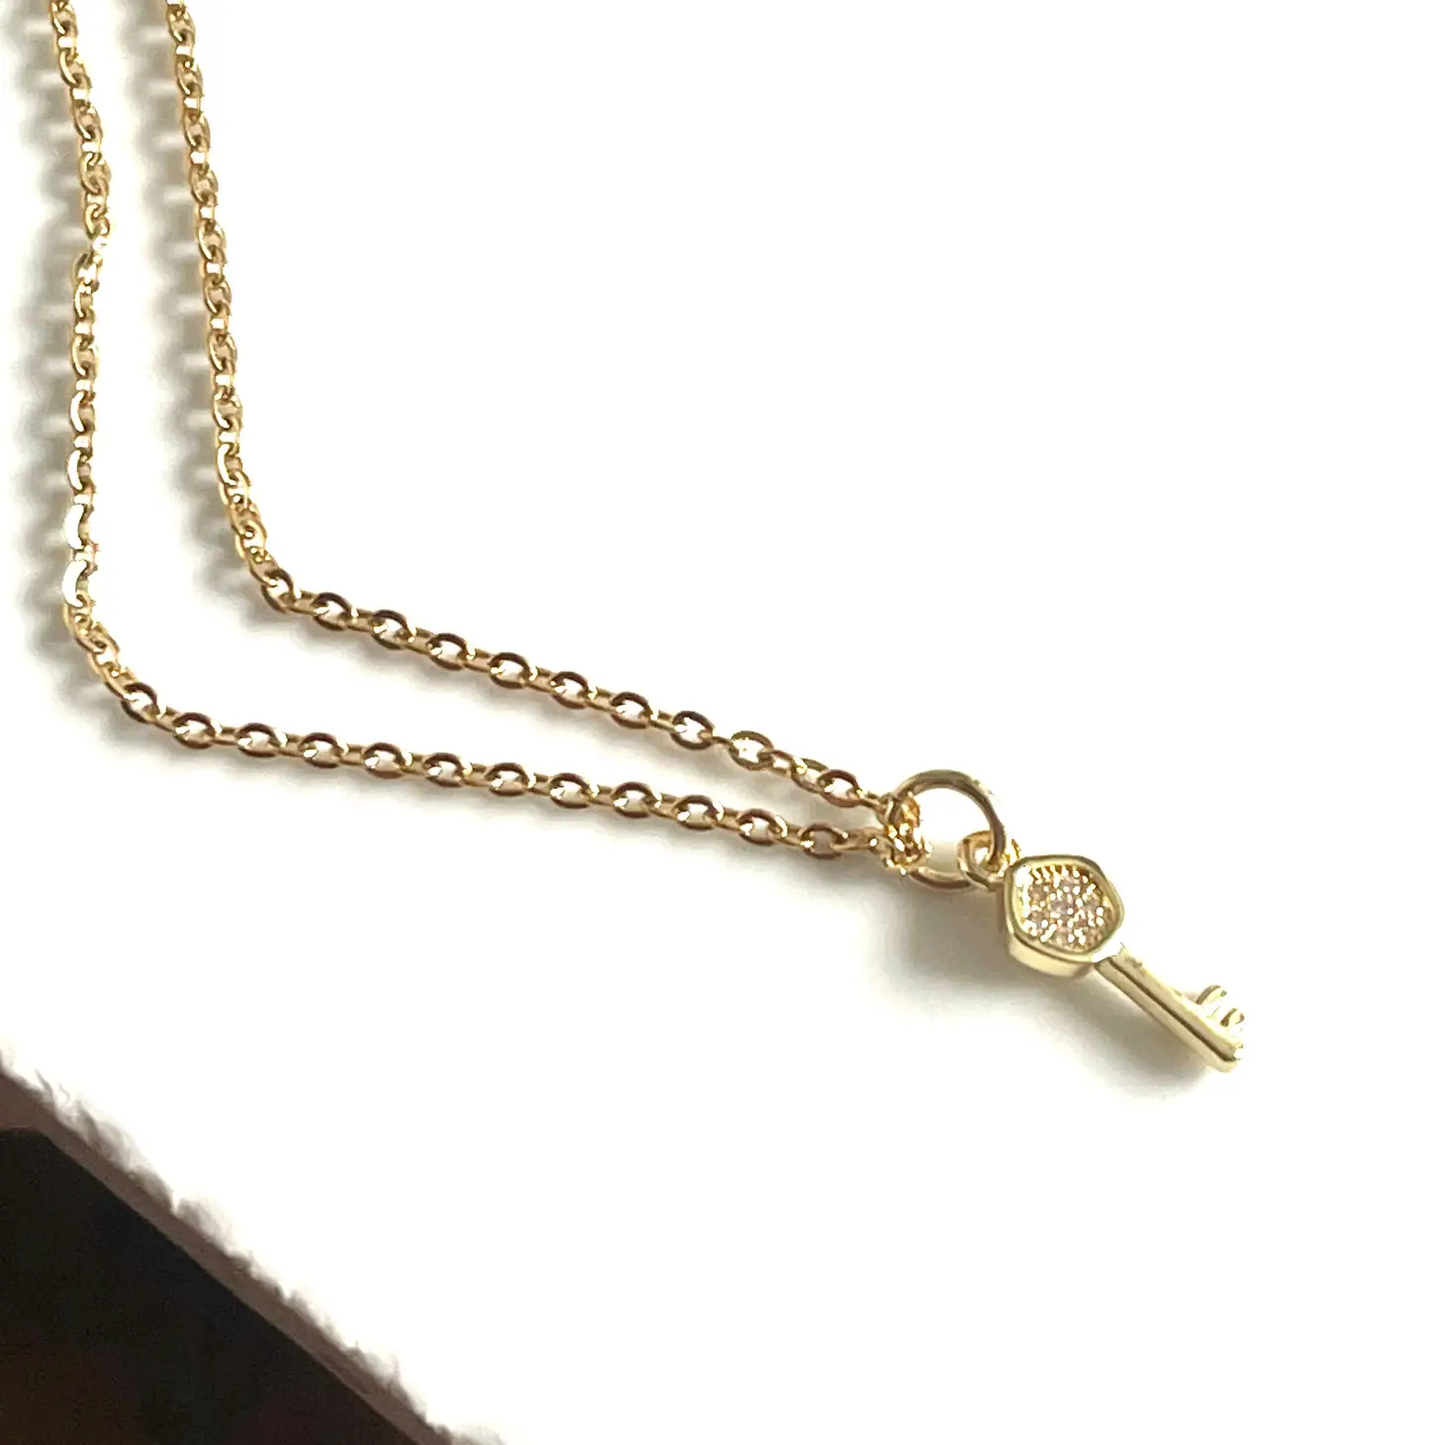 Tiny Gold Key Necklace